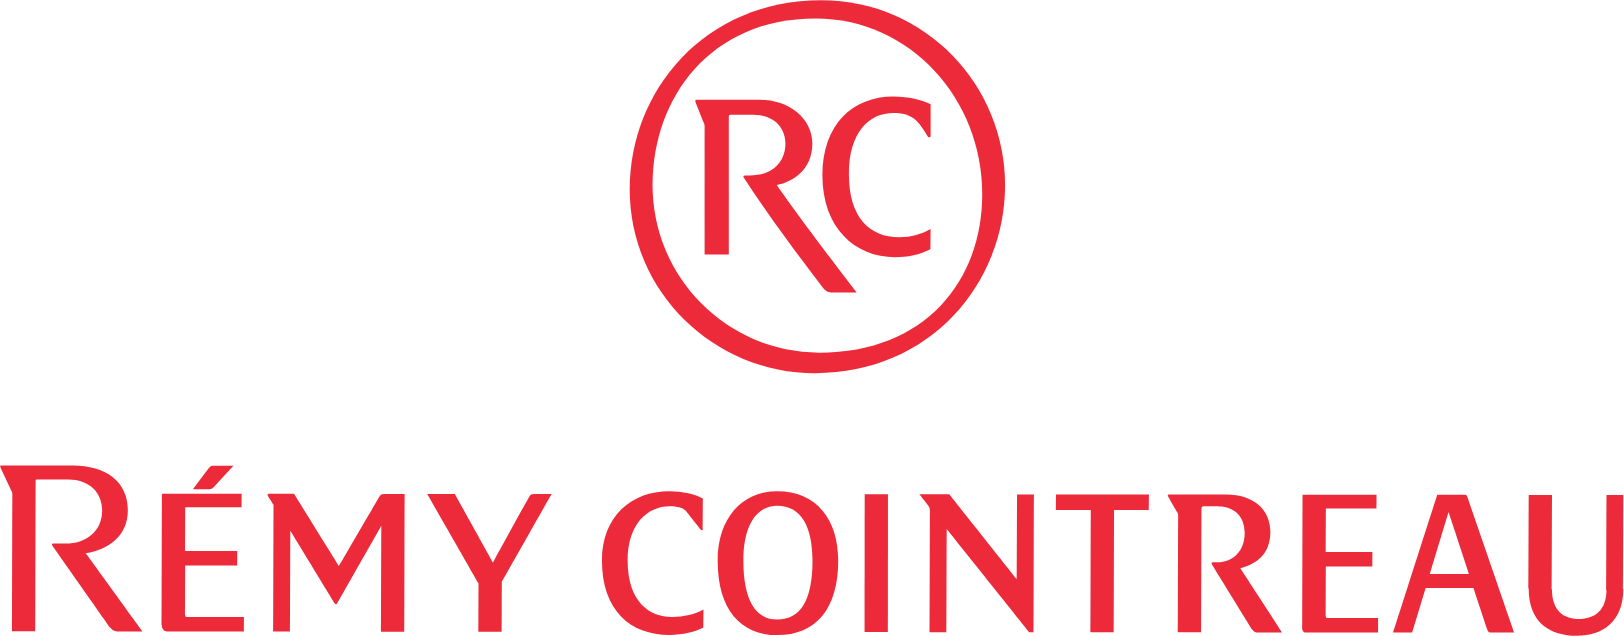 Rémy Cointreau
 logo large (transparent PNG)